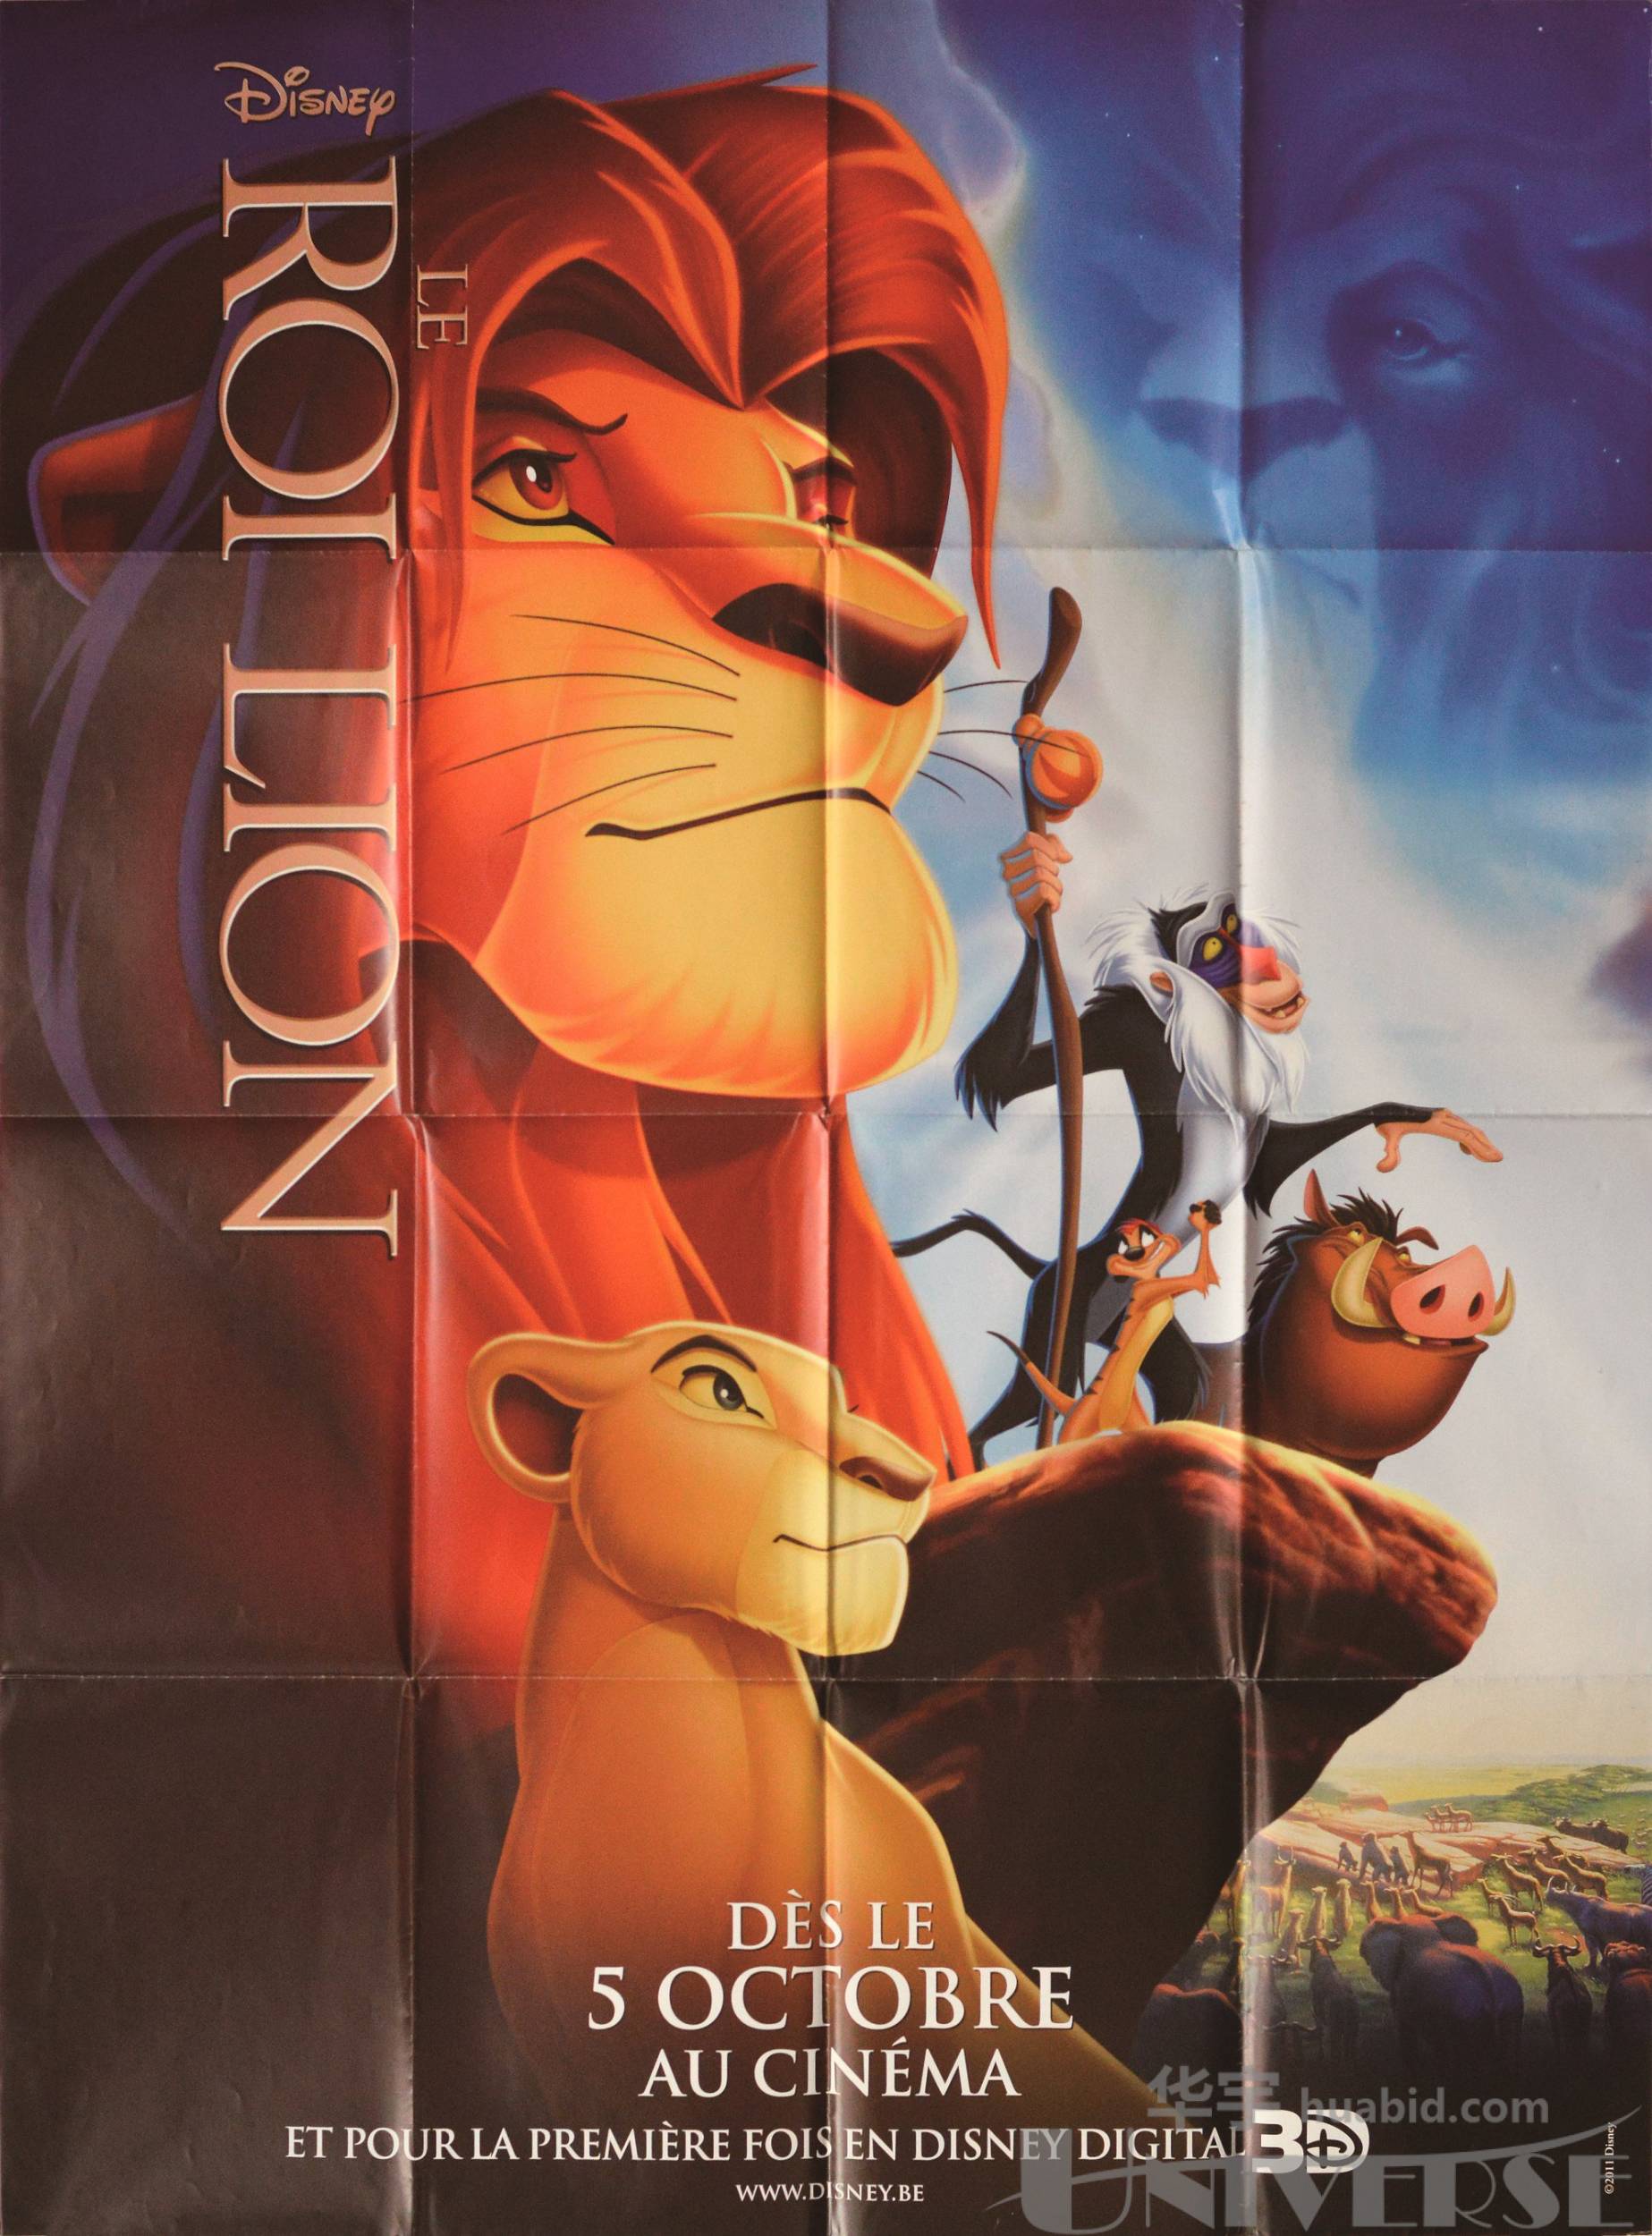 lot 5838《狮子王》外文原版巨幅电影海报一张,尺寸:117.9×159.